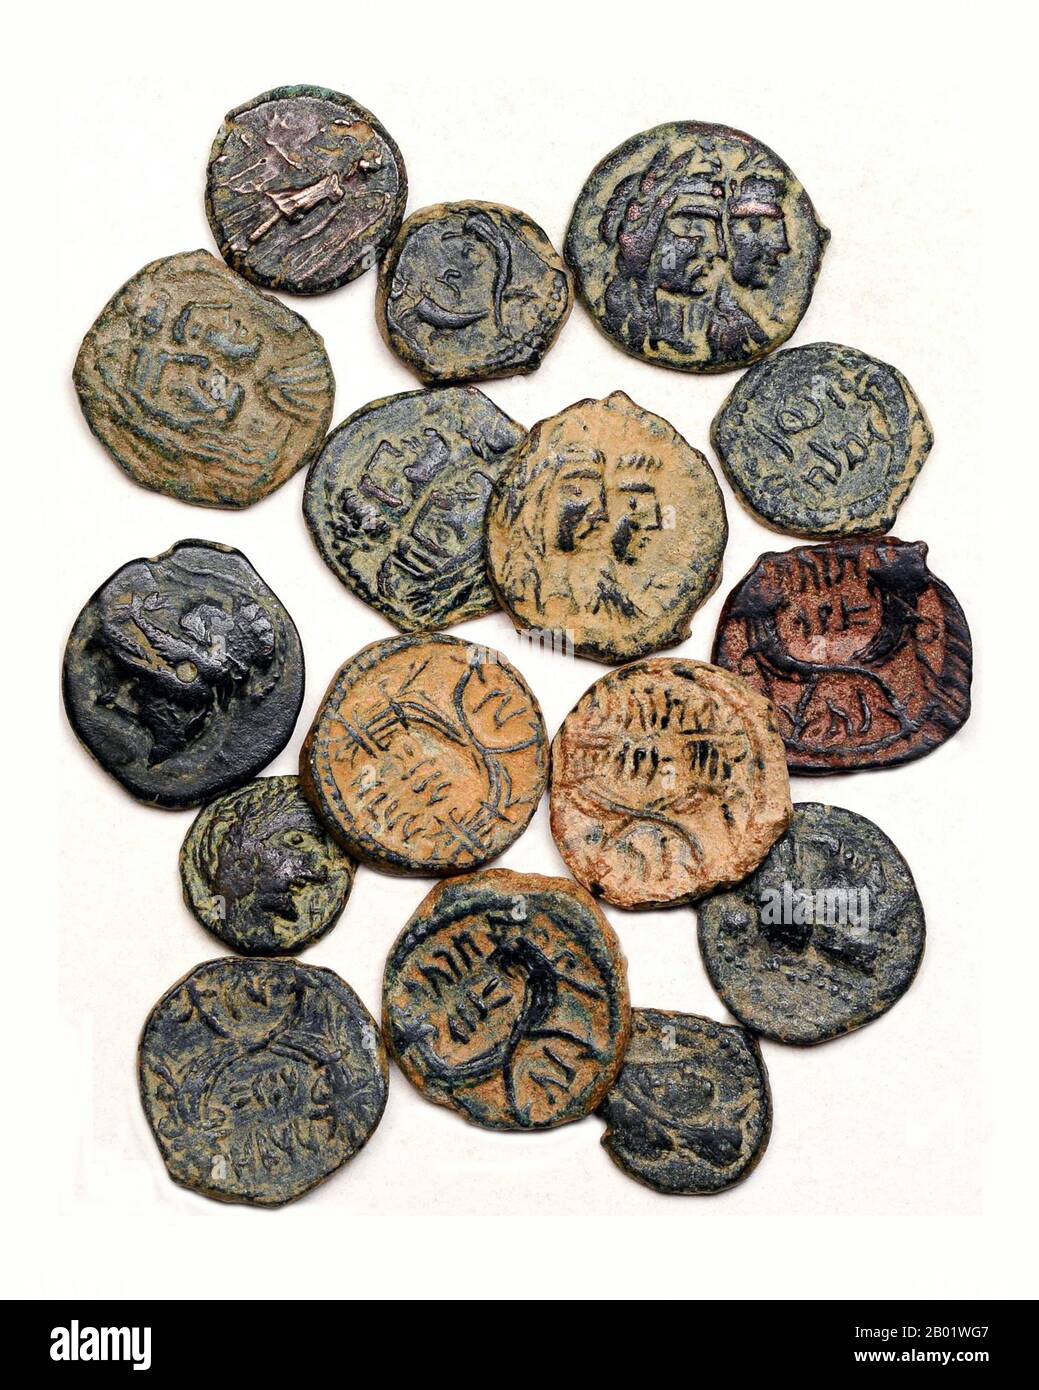 Jordanien/Jemen: Eine Sammlung nabatäischer Bronzemünzen, die in Petra geschlagen und in Nabataea, Südjemen, ca. 2.-1. Jahrhundert v. Chr. gefunden wurden. Die Nabatäer, auch Nabatäer, waren antike Völker Jordaniens, deren Oasen-Siedlungen zur Zeit des Josephus (37–100 n. Chr.) dem Grenzgebiet zwischen Syrien und Arabien, vom Euphrat bis zum Roten Meer, den Namen Nabatene gaben. Ihr locker kontrolliertes Handelsnetz, das sich auf die von ihnen kontrollierten Oasen konzentrierte, in denen Landwirtschaft in begrenzten Gebieten intensiv praktiziert wurde, und auf die sie verbindenden Routen, hatte keine sicher definierten Grenzen. Stockfoto